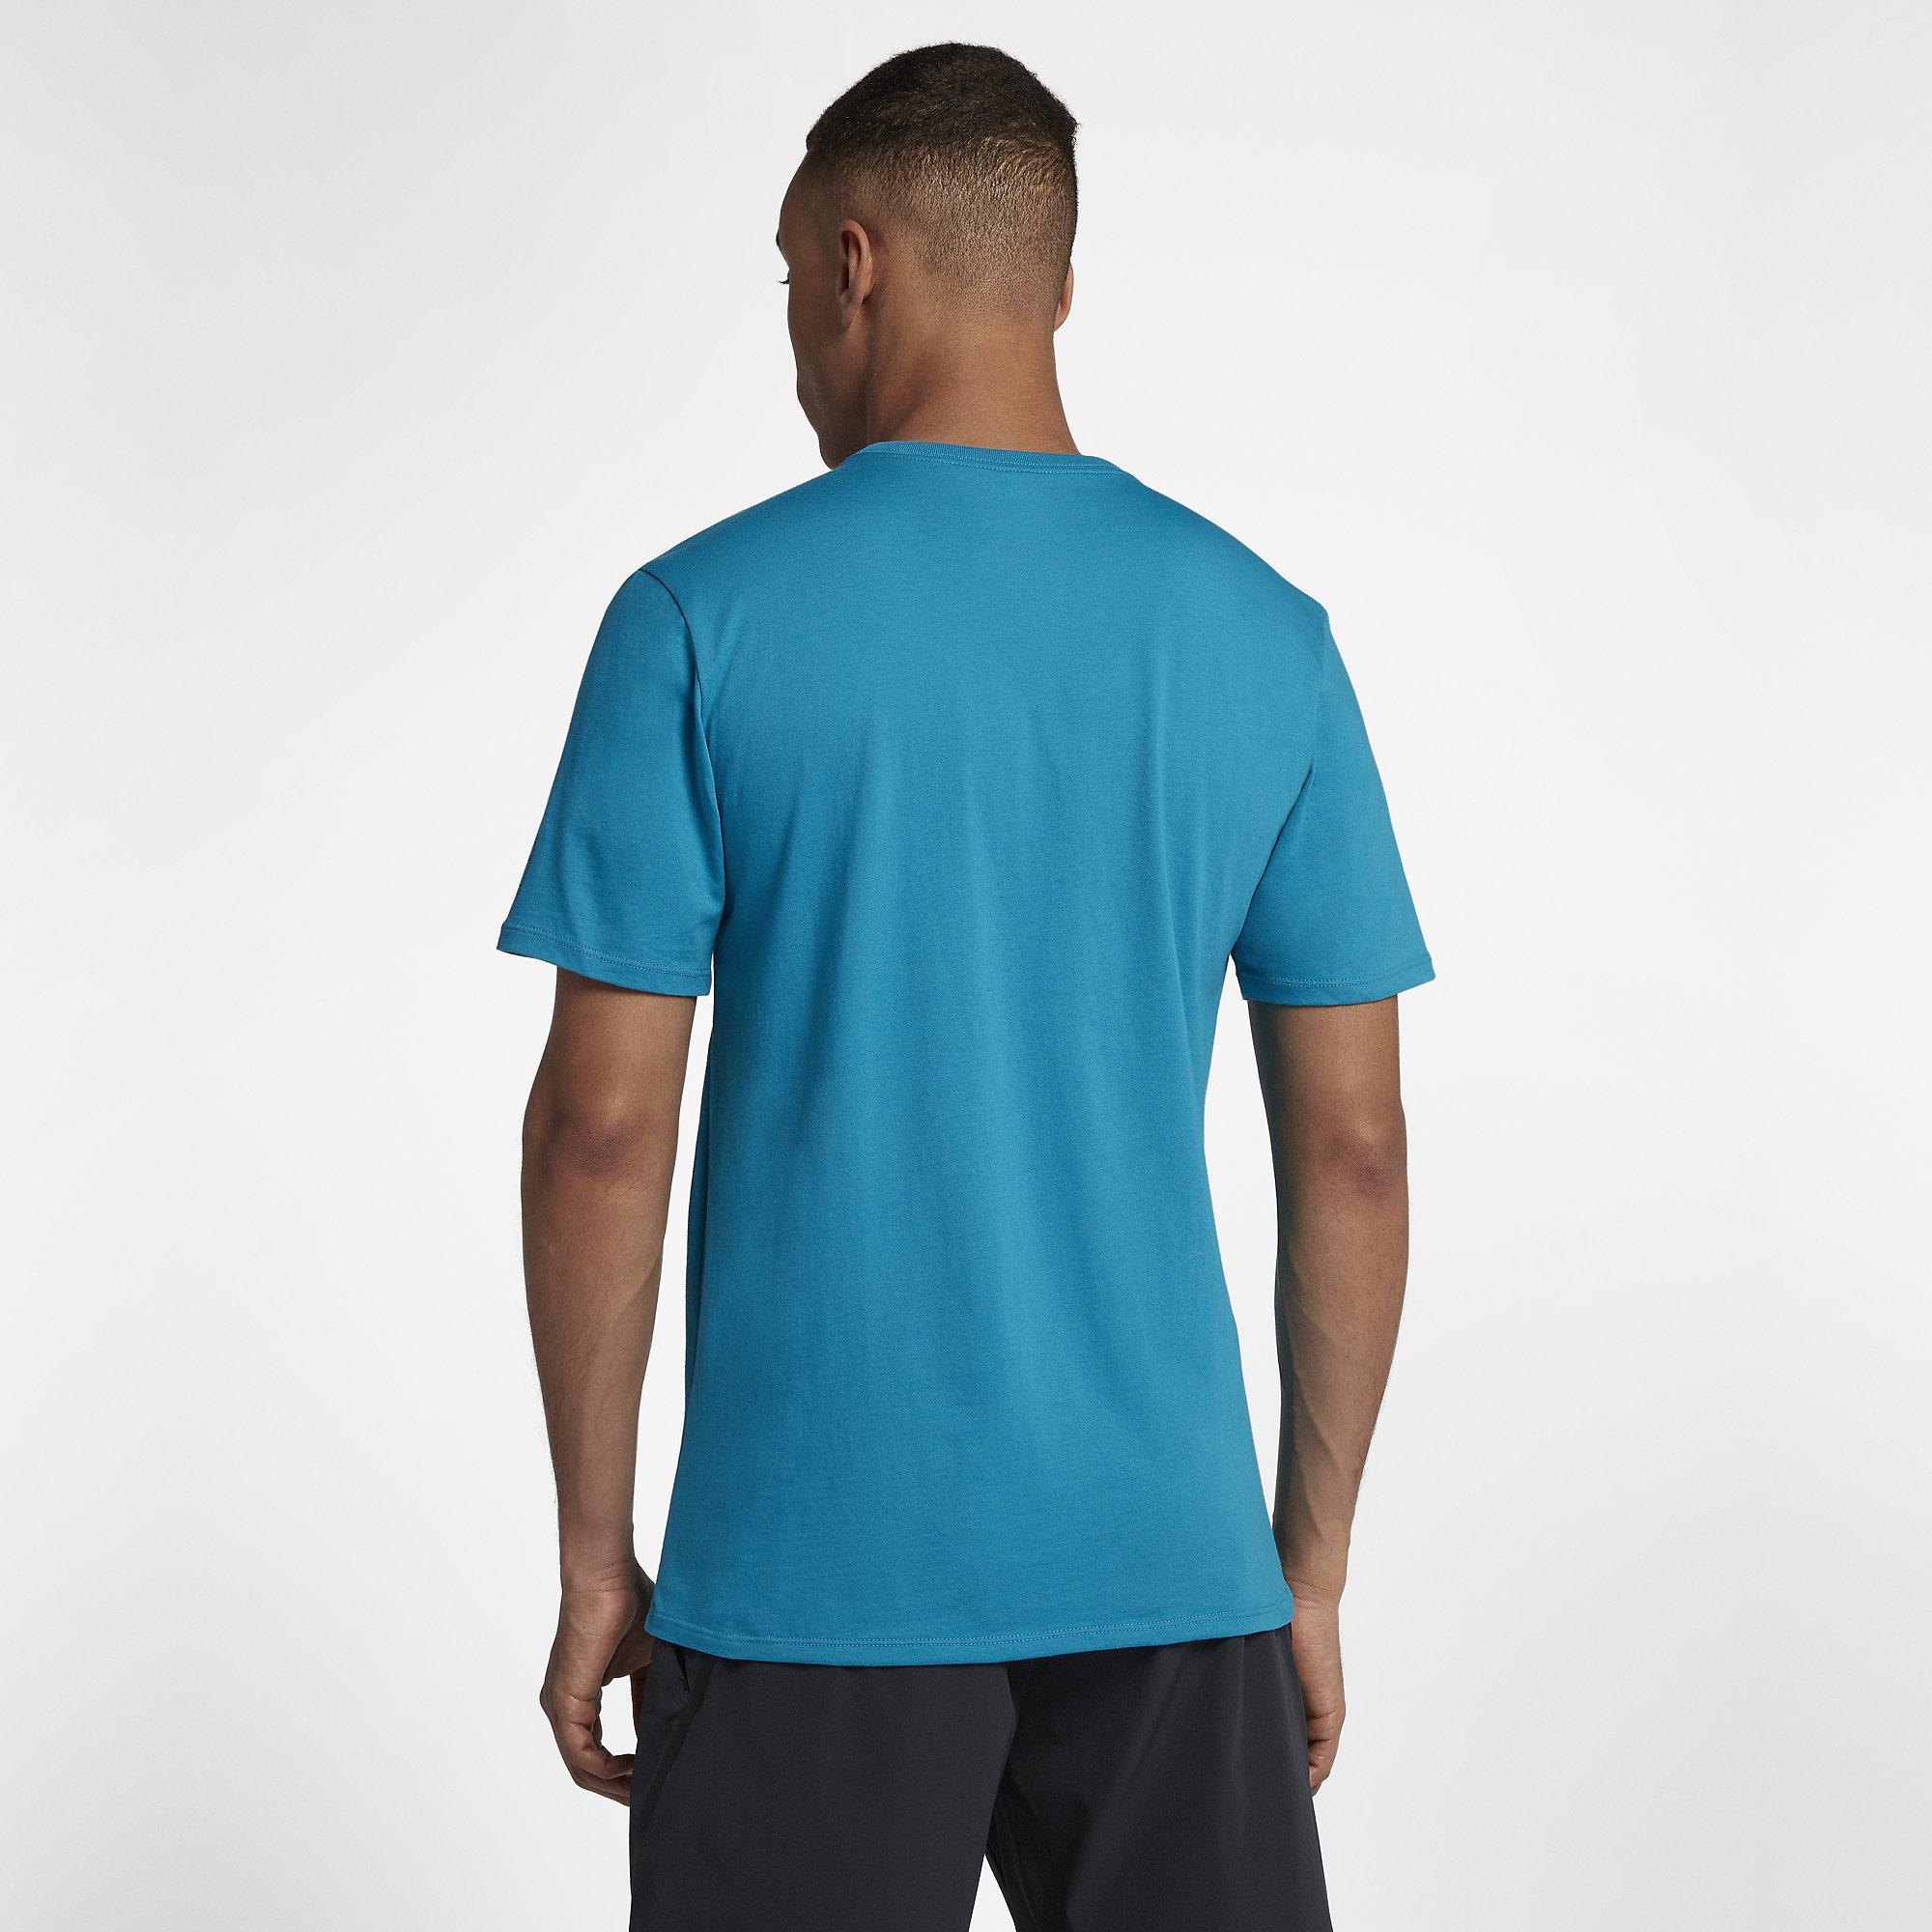 Nike Mens RF T-Shirt - Neo Turquoise/Black - Tennisnuts.com